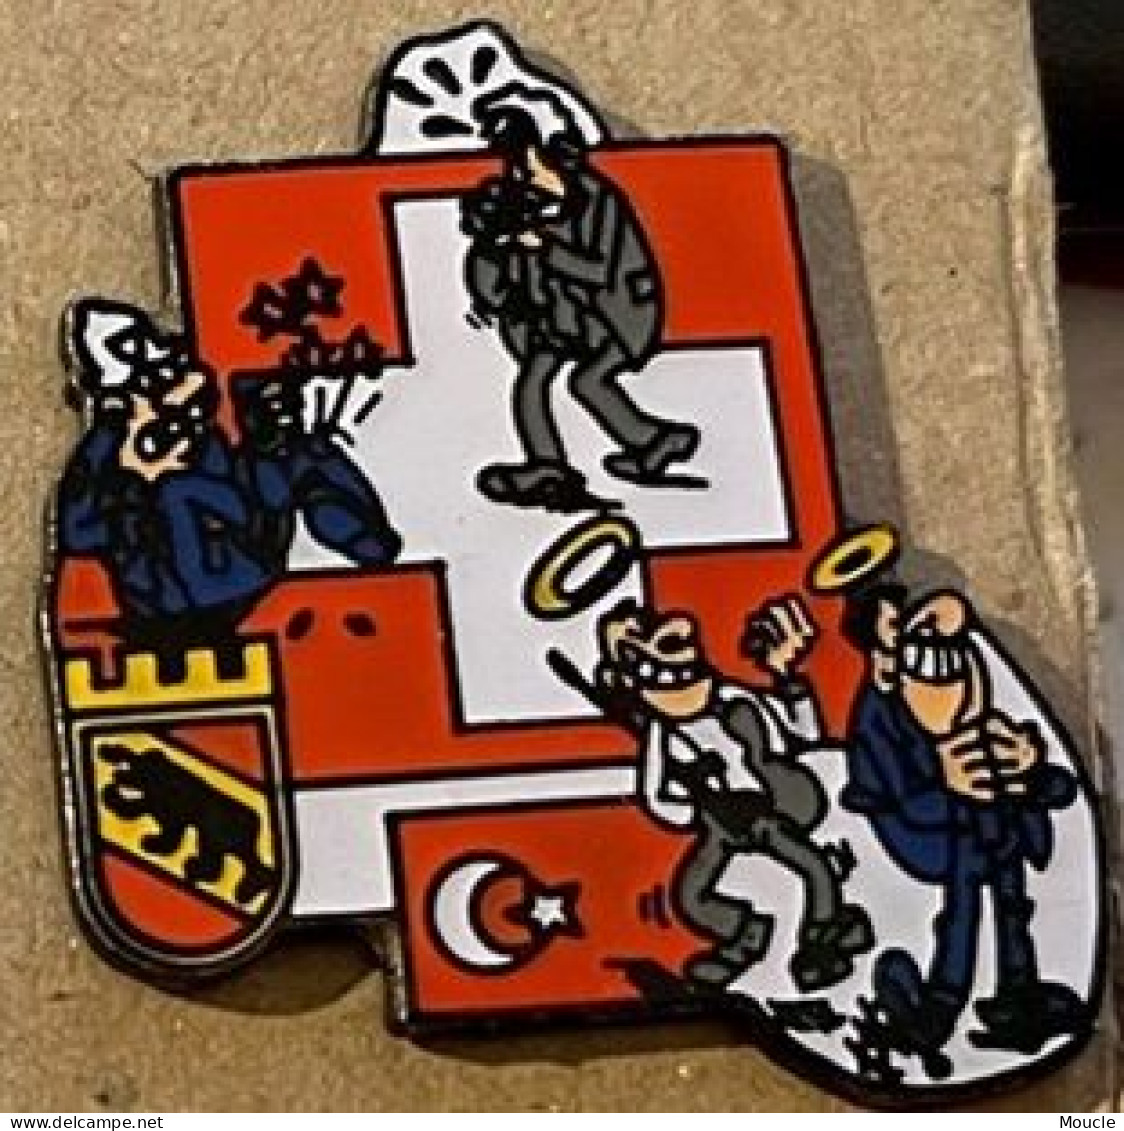 POLICE VILLE DE BERNE SUISSE - STADT POLIZEI BERN - SCHWEIZ - POLICIA - SWITZERLAND - TURC  -  (33) - Polizei